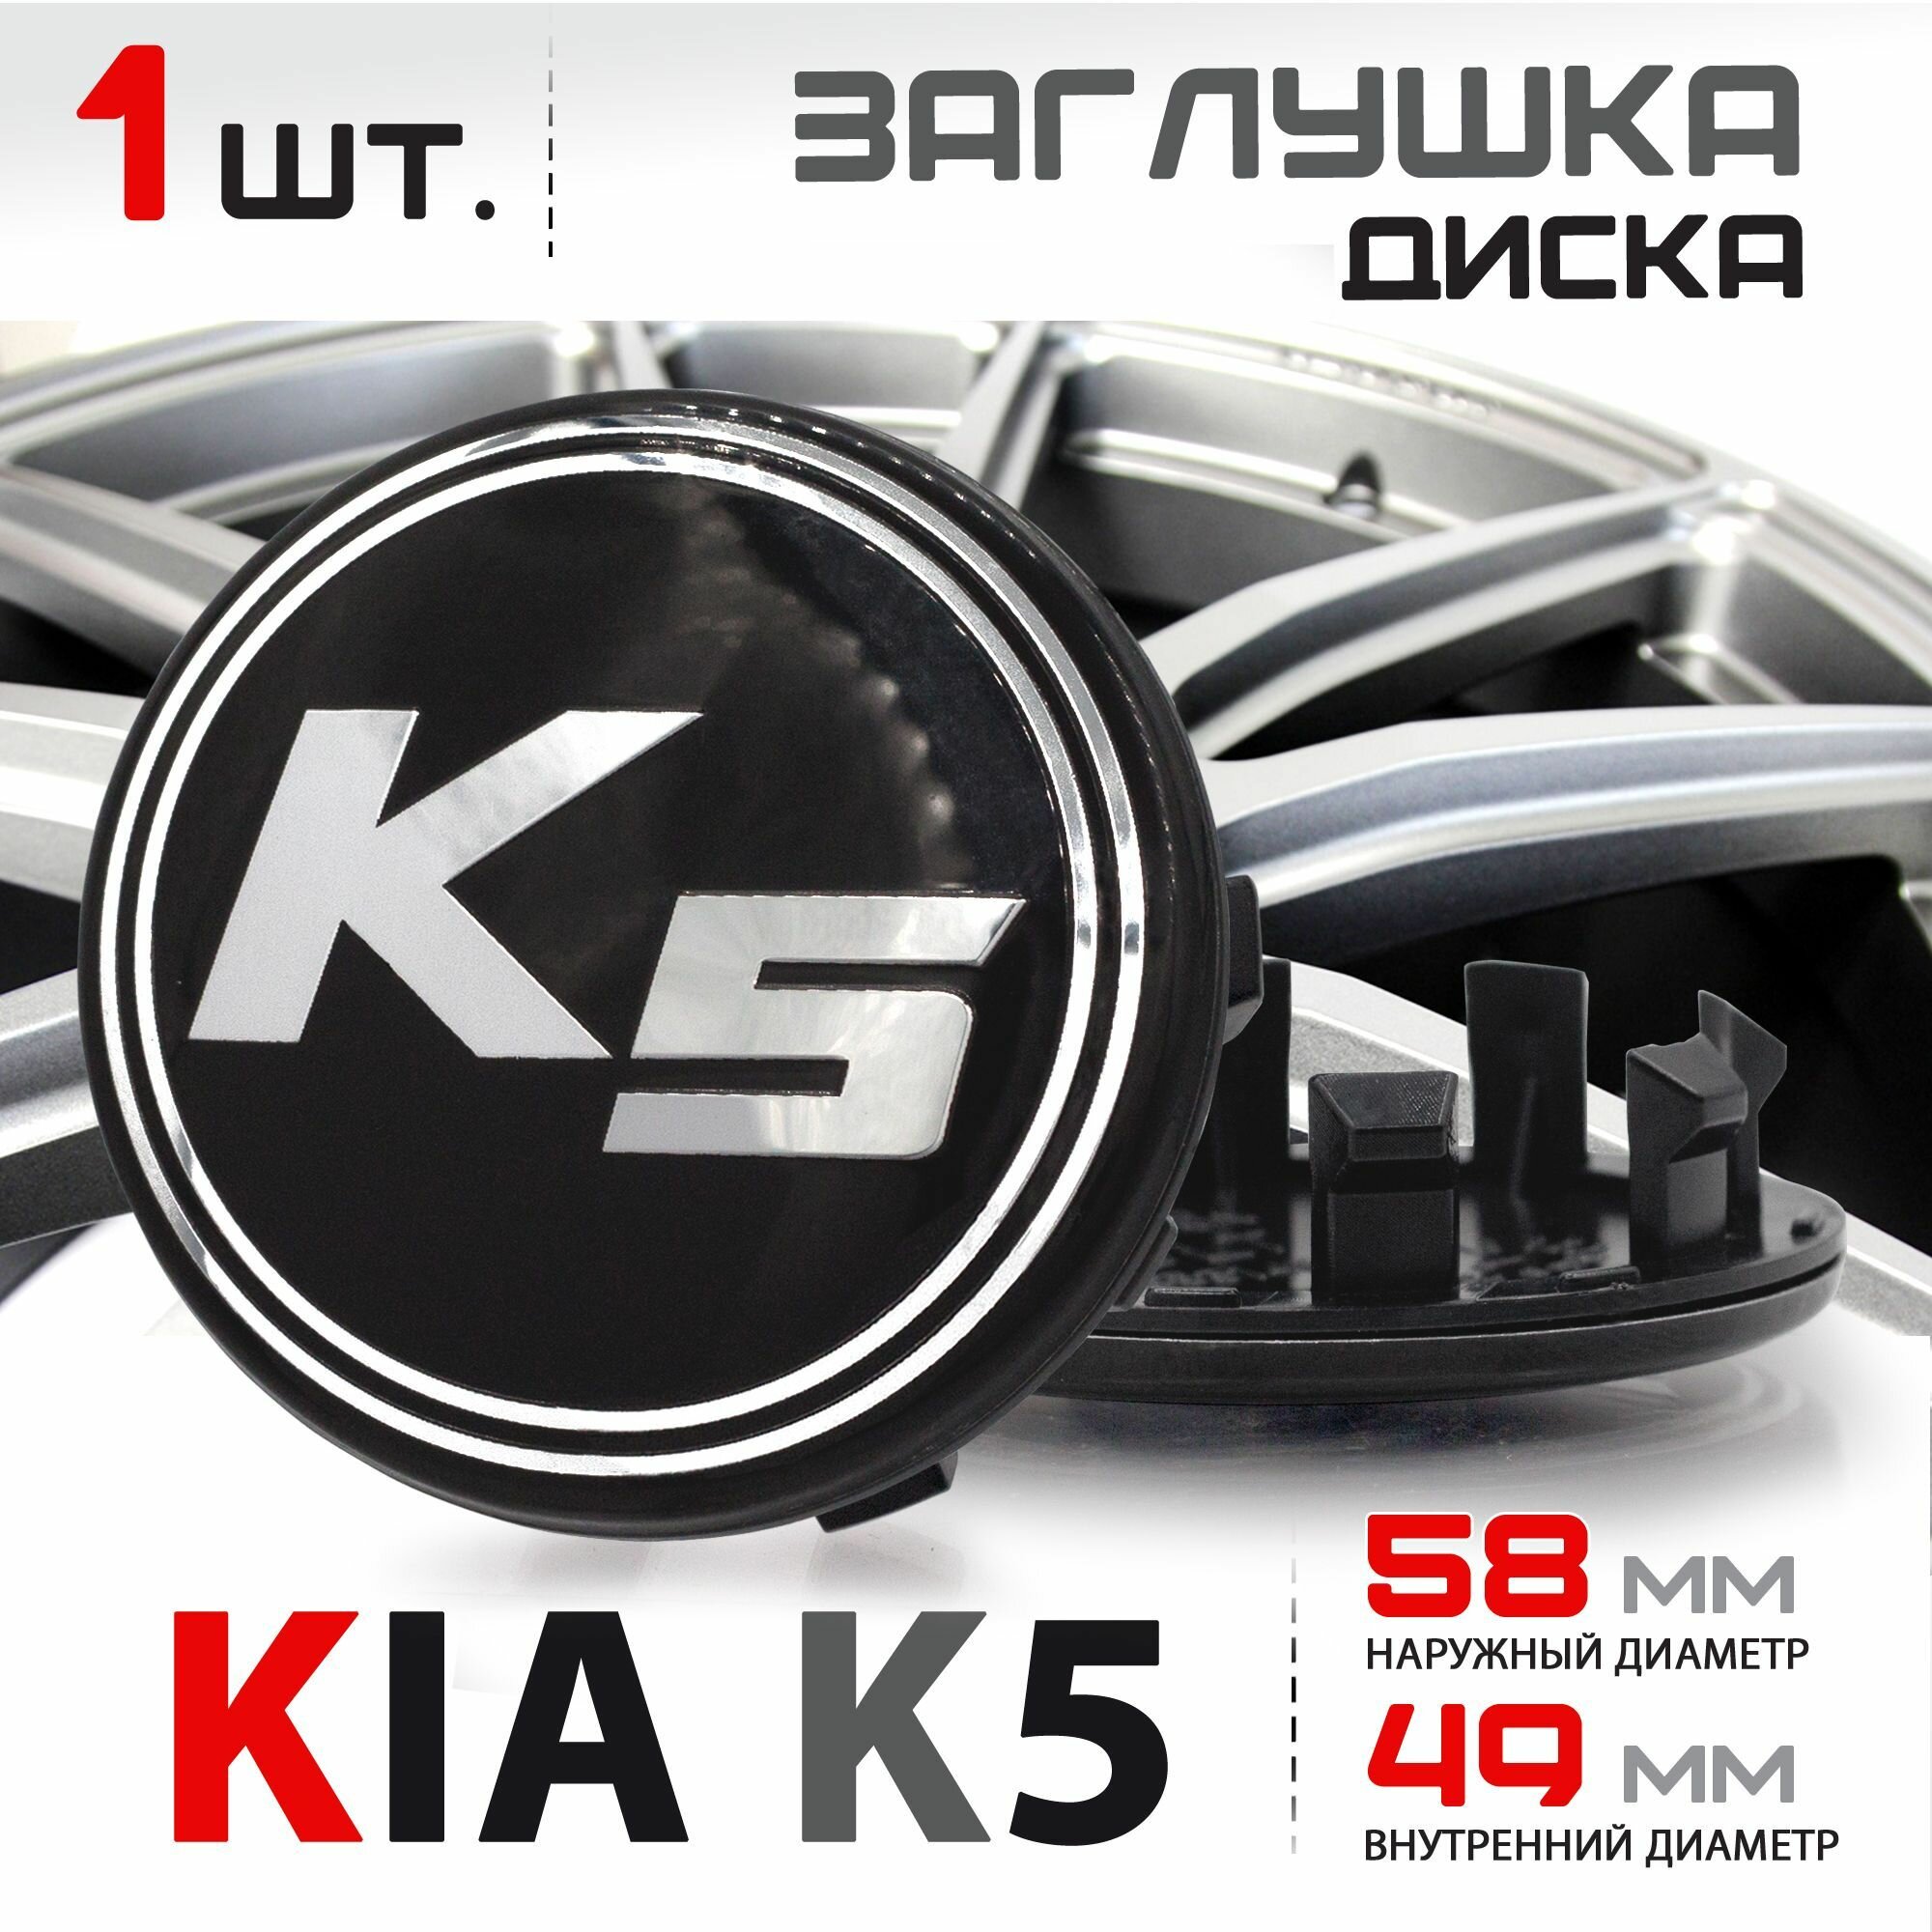 Колпачок заглушка на литой диск колеса для KIA K5 Киа Optima Оптима - 58мм C5314K58 - 1 штука черный/хром